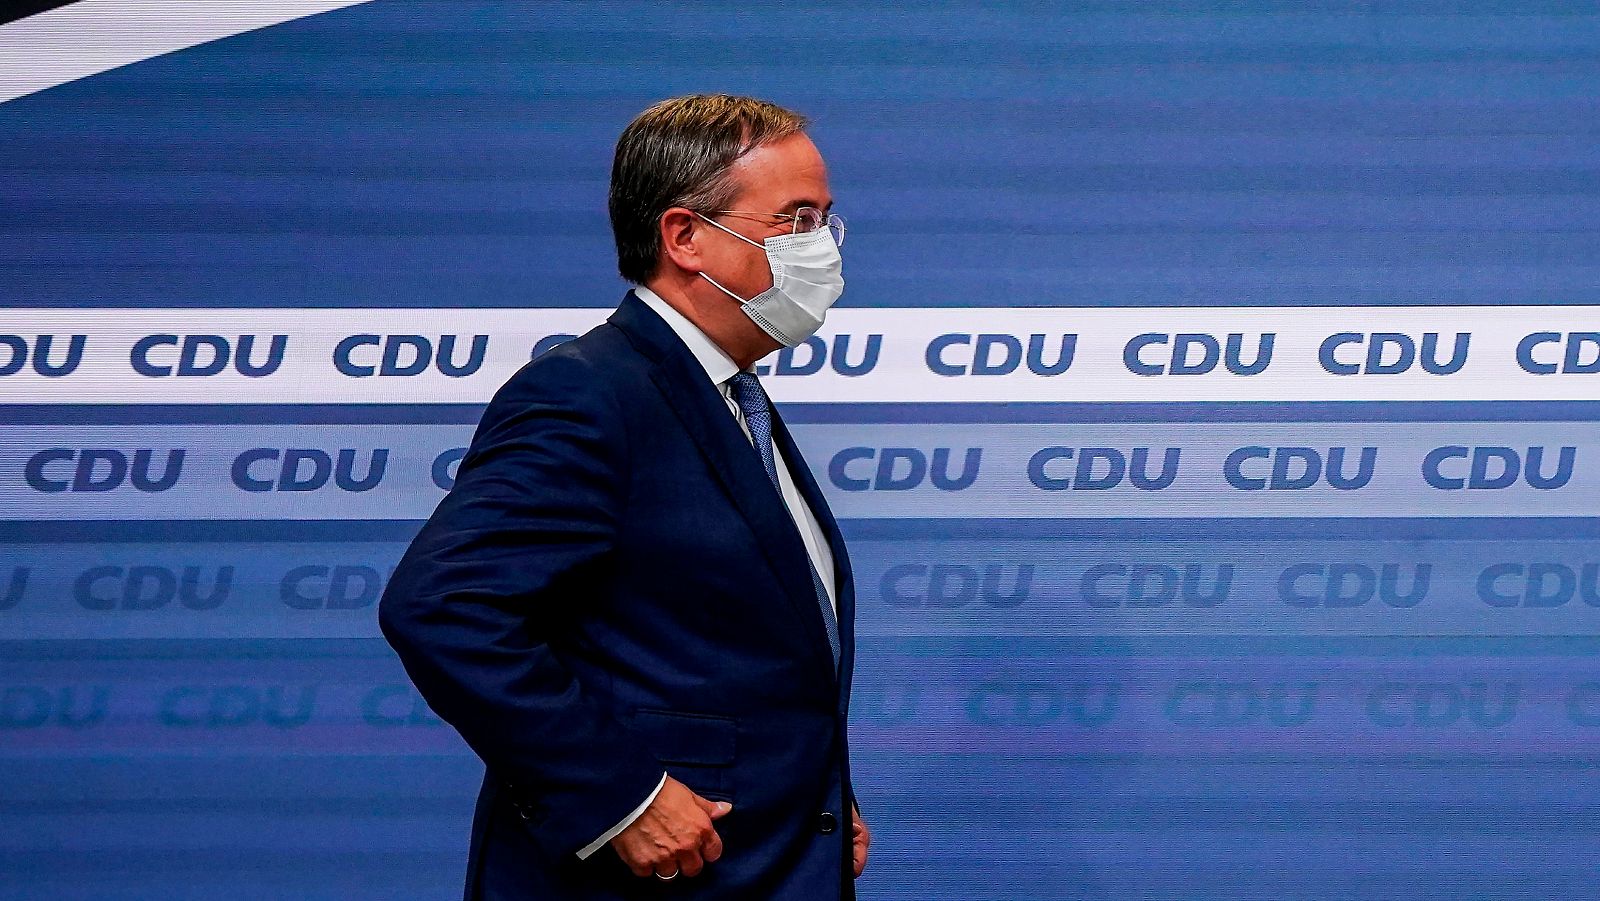 Las mañanas de RNE con Íñigo Alfonso - Günther Maihold: "La CDU va a estar dispuesta a sacrificar mucho para mantenerse en el Gobierno" - Escuchar ahora